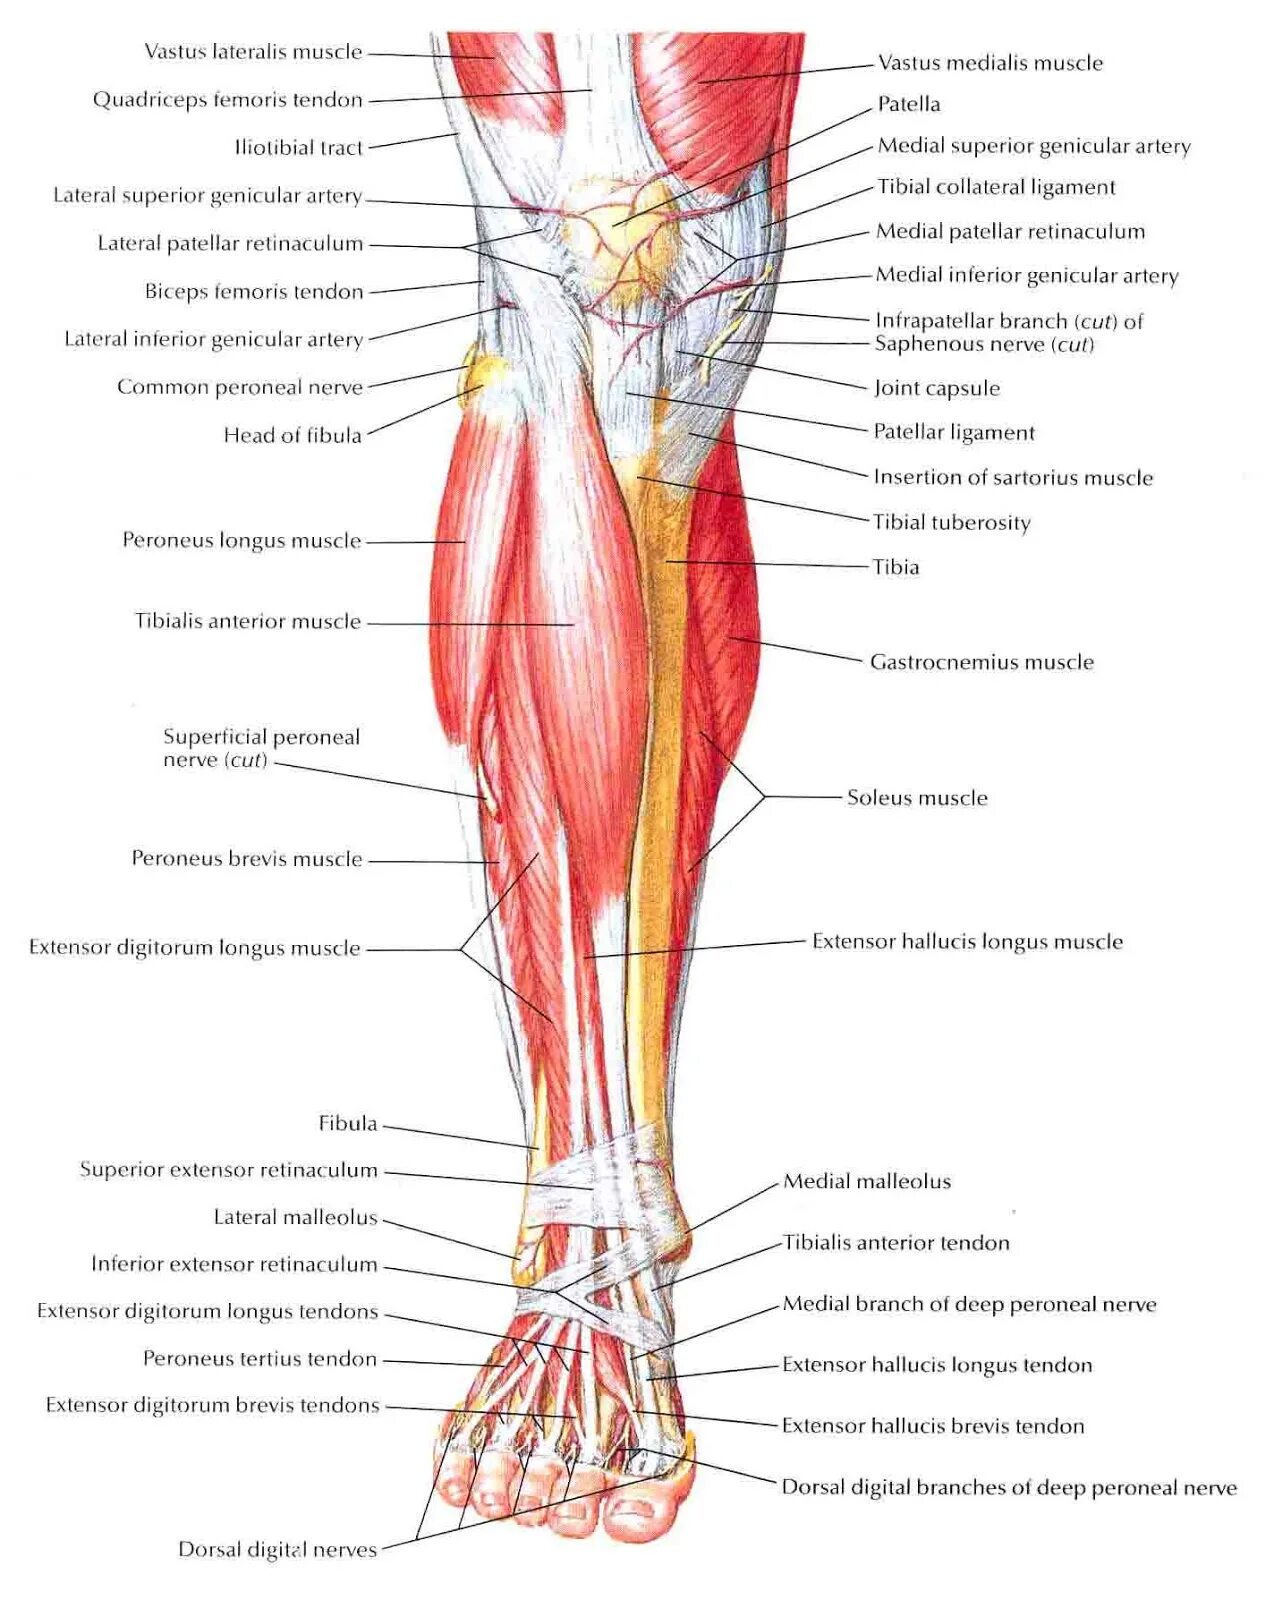 Мышцы голени анатомия человека. Топографическая анатомия голени человека. Передняя поверхность голени топографическая анатомия мышцы. Мышцы голени передняя поверхность анатомия.